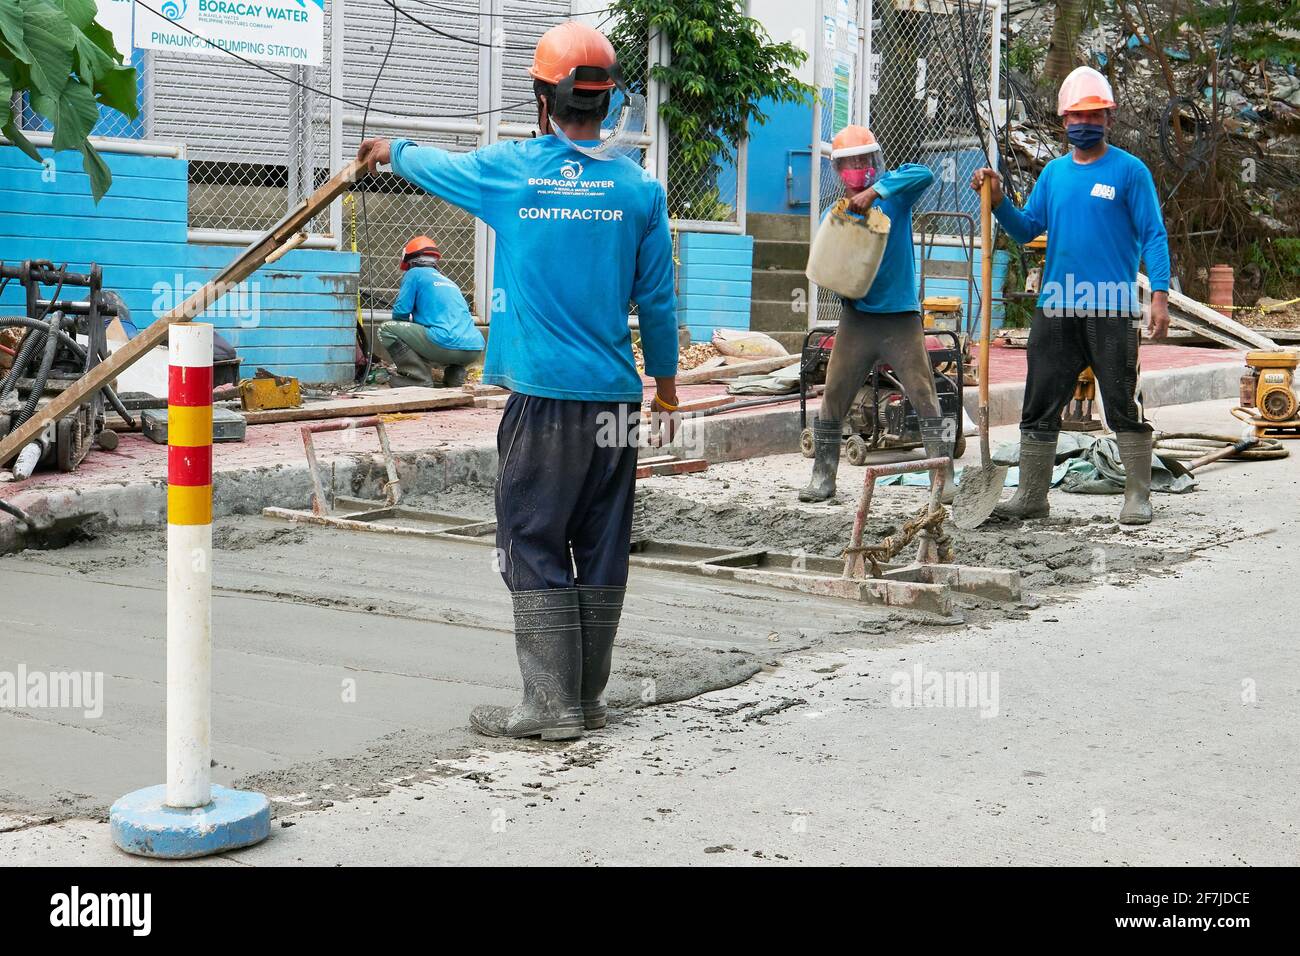 Les travailleurs de la construction routière de Boracay Water en action, cimentant la route principale sur l'île Boracay, province d'Aklan, Philippines pendant la pandémie. Banque D'Images